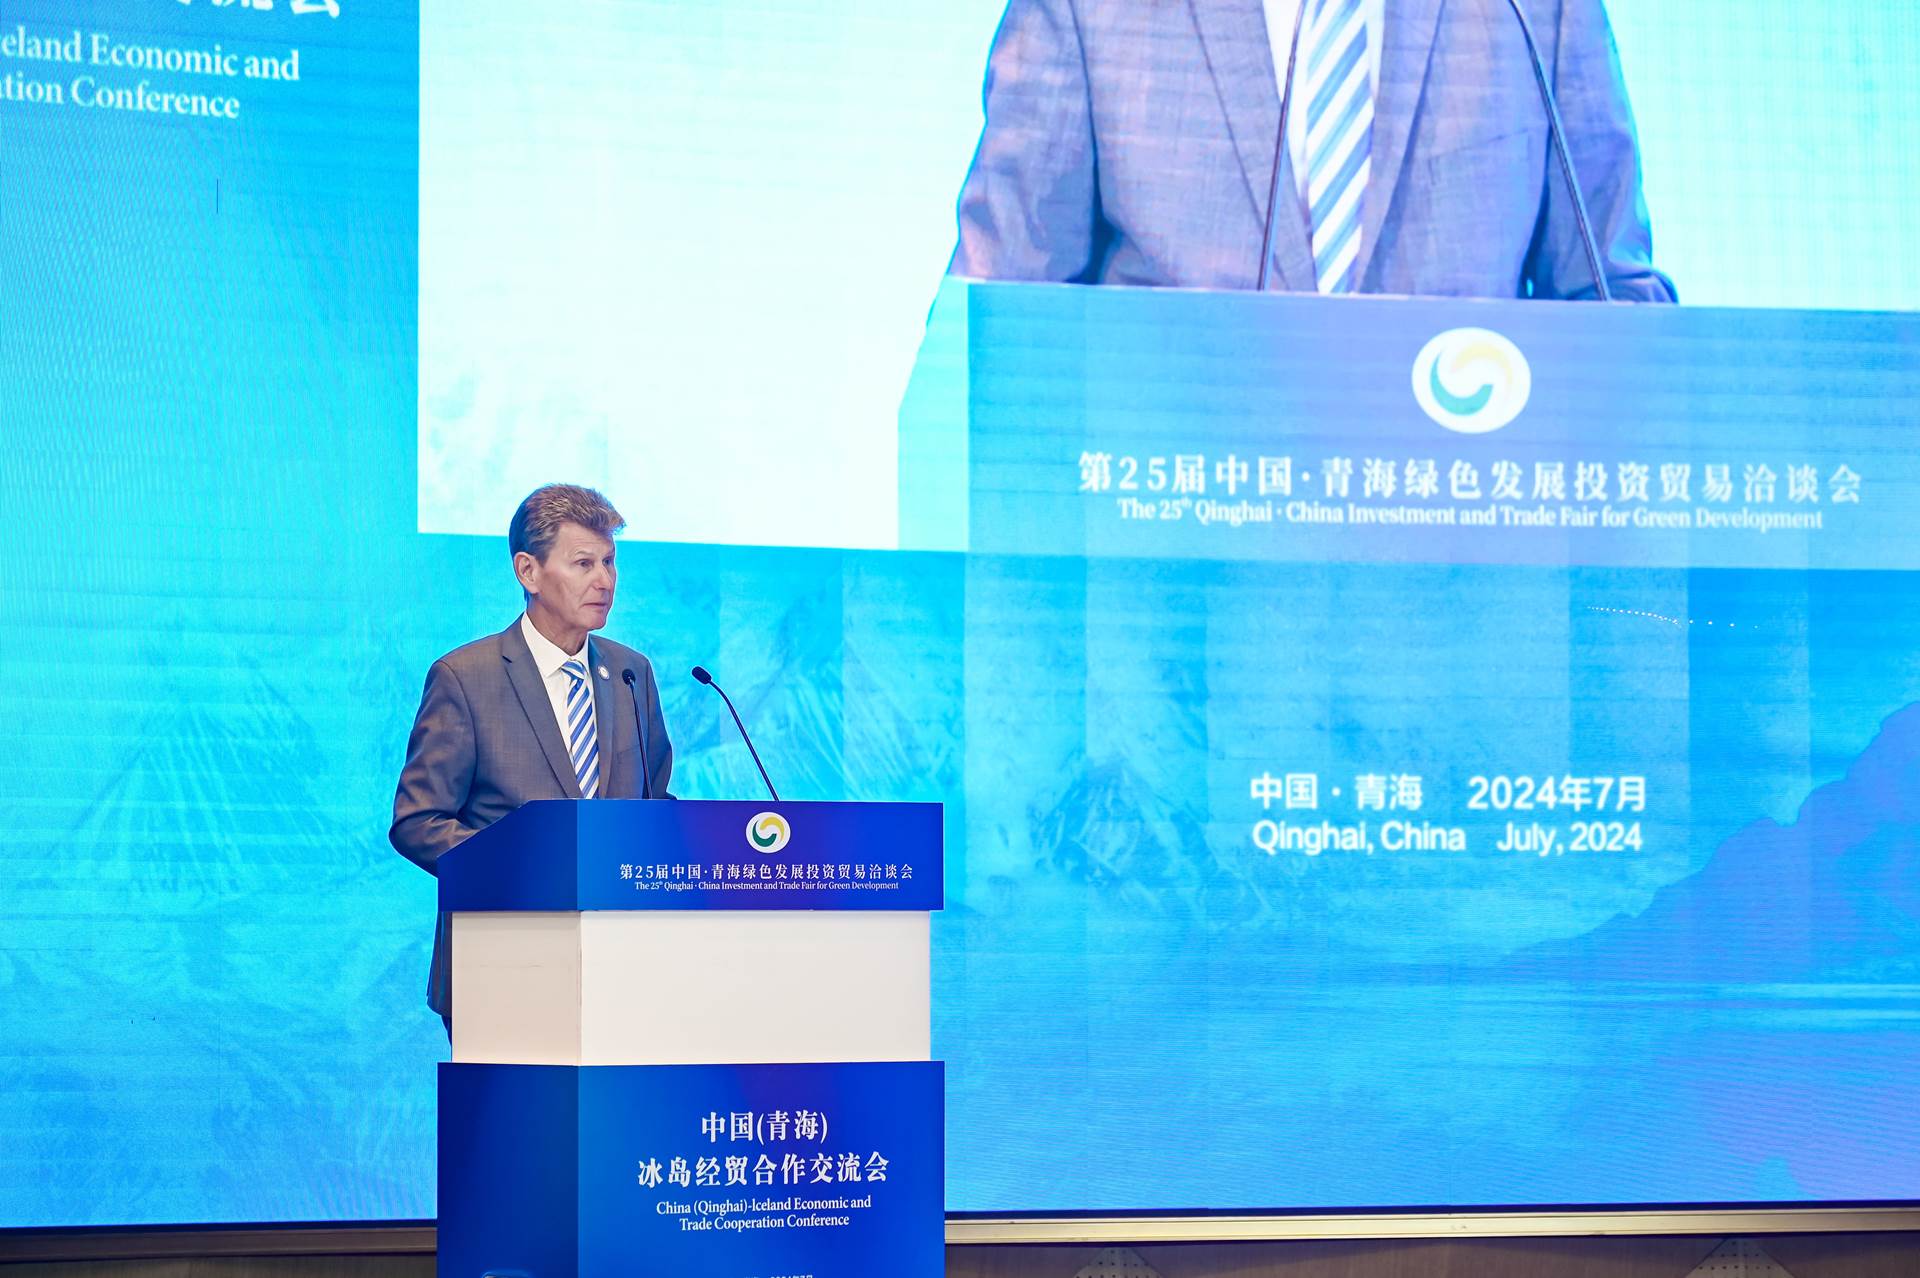 2024 Qinghai Investment & Trade Fair for Green Development  - mynd